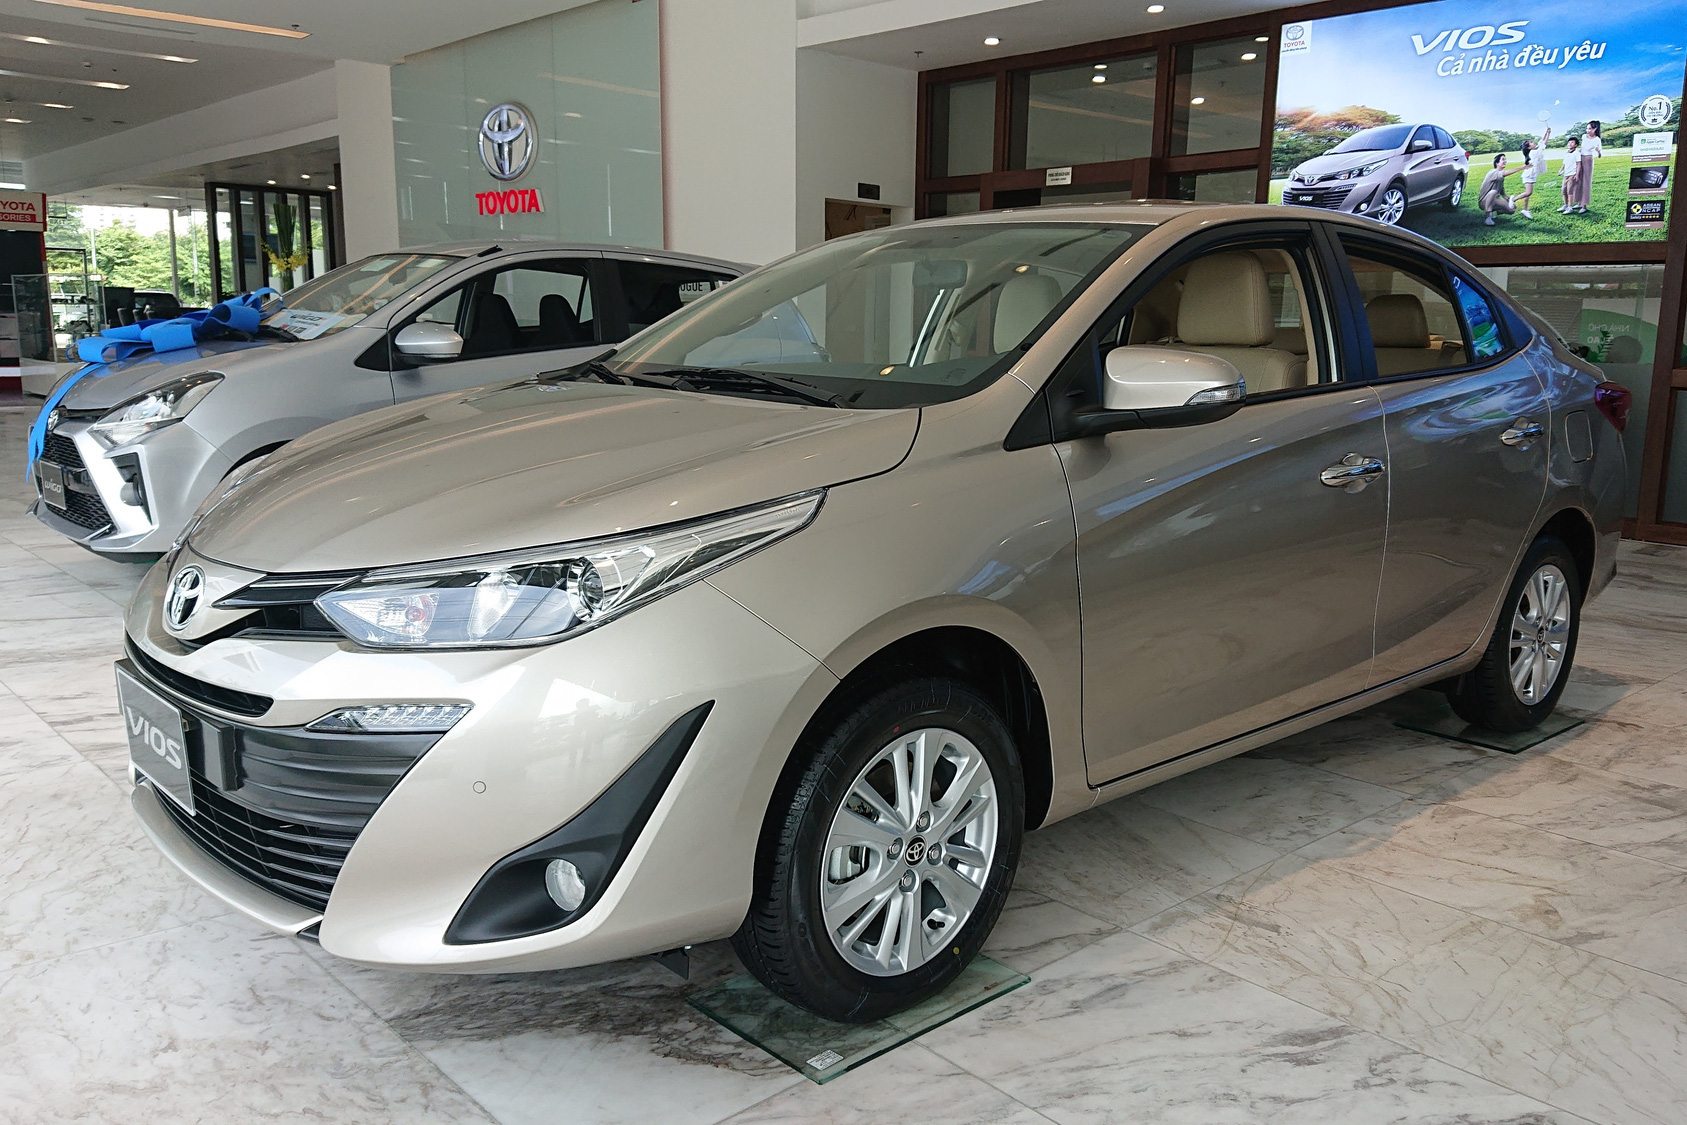 Chủ Toyota Vios tại Hà Nội bốc được biển ngũ quý 7, dân tình thi nhau luận biển, đoán giá bán lại hàng tỷ đồng - Ảnh 2.